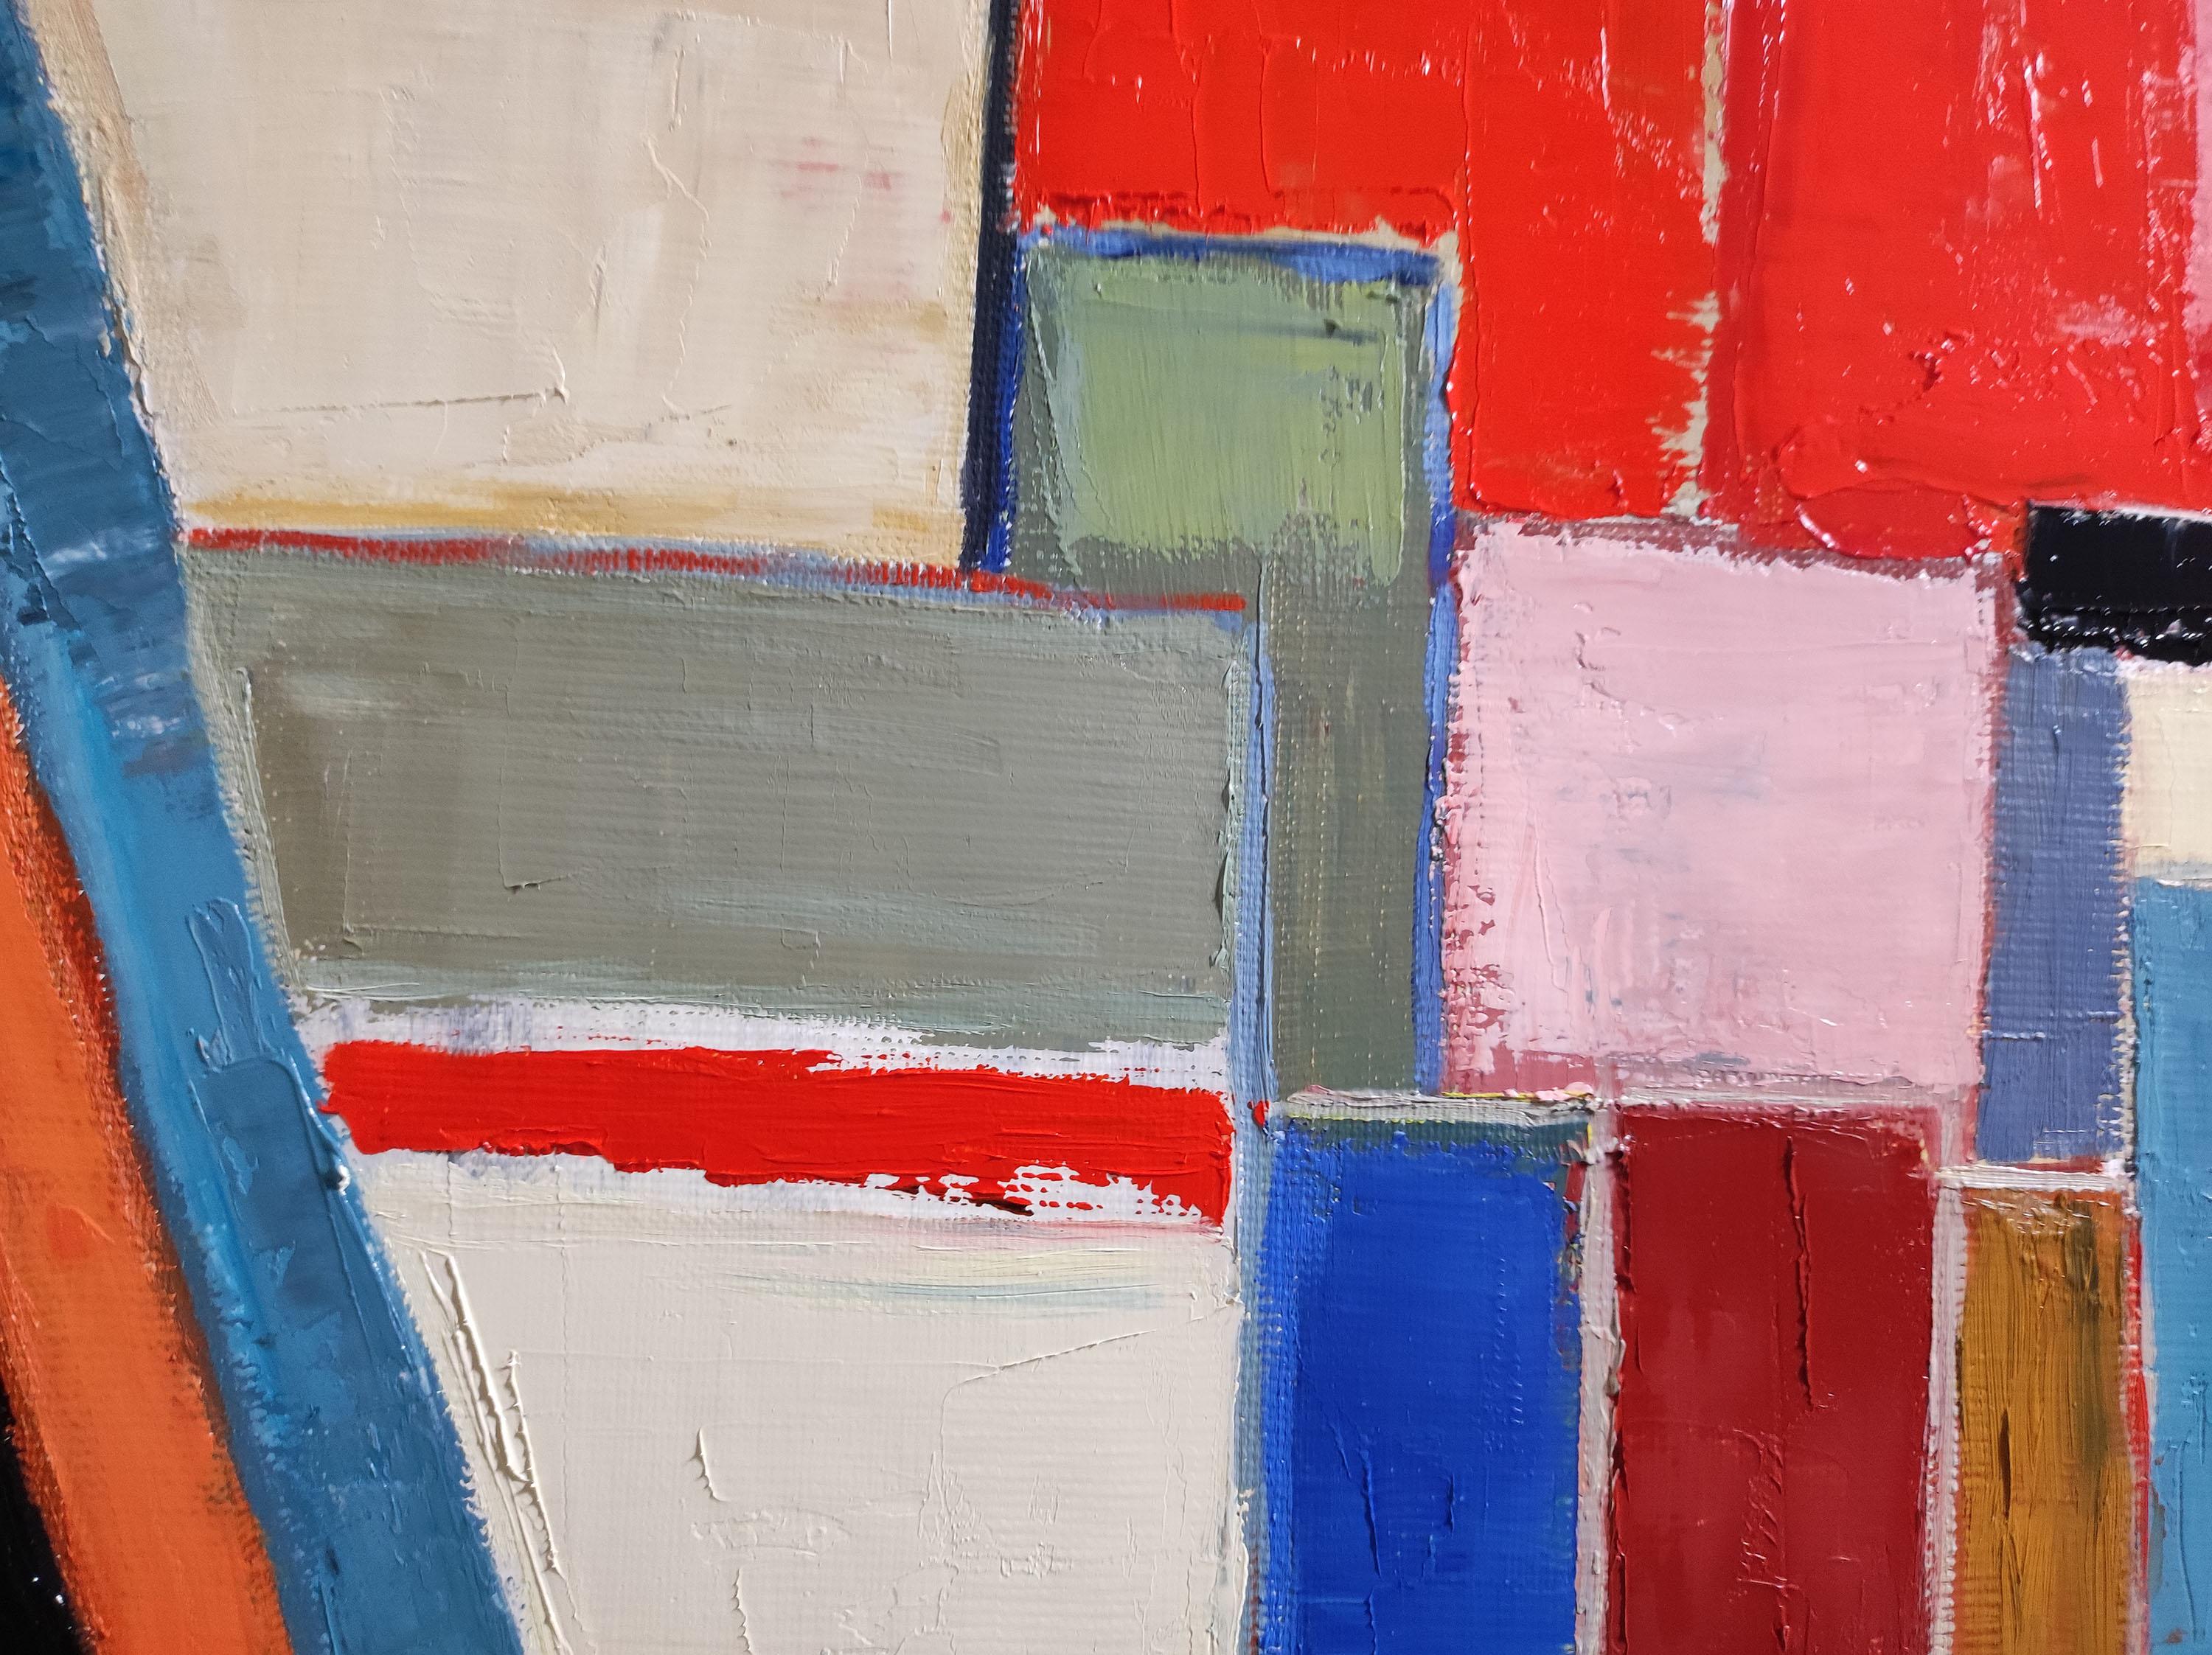 Die Abstraktion von Sophie DUMONT ist kein Konzept, sondern eine Herangehensweise, bei der jede Leinwand um Grafiken herum aufgebaut ist, die durch Farbe ins rechte Licht gerückt werden.

Das Gemälde eines roten Künstlerateliers, in dem die